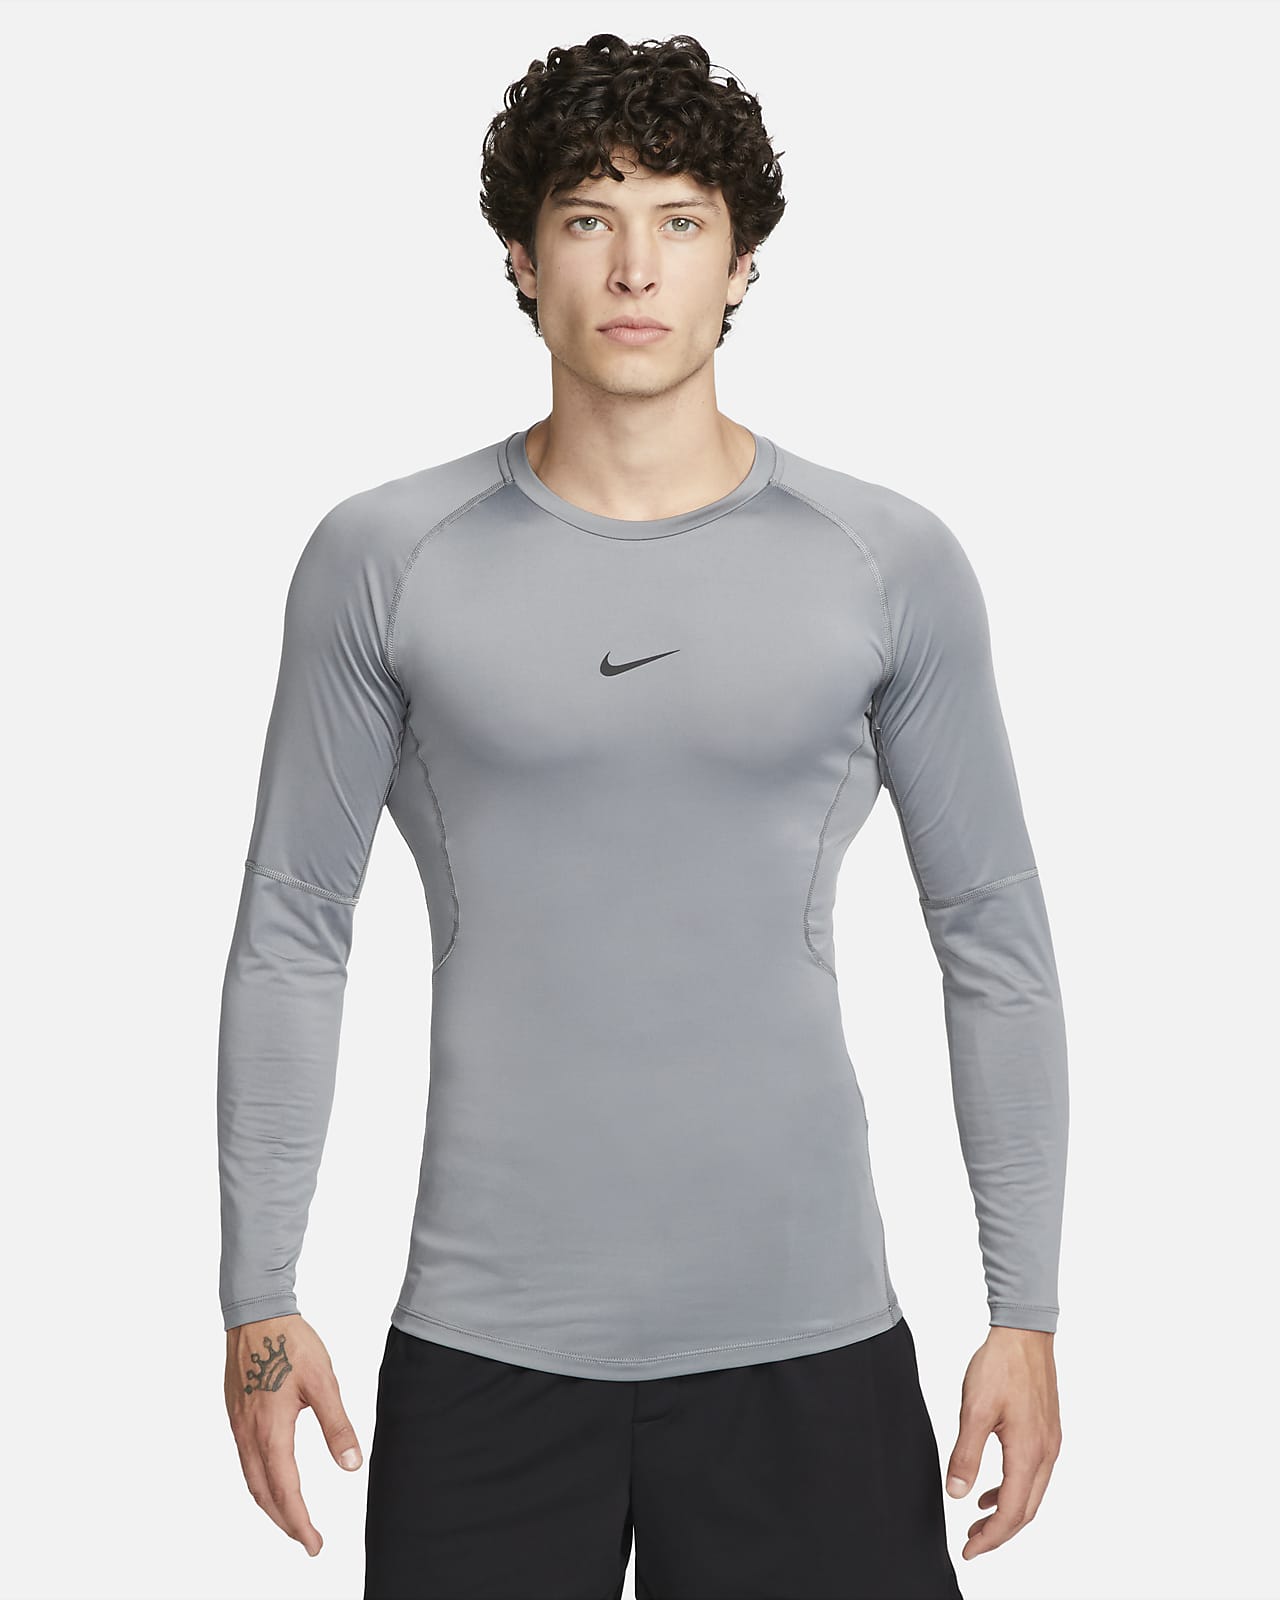 Nike Pro férfi hosszúujju alálöltözet, Dri-Fit